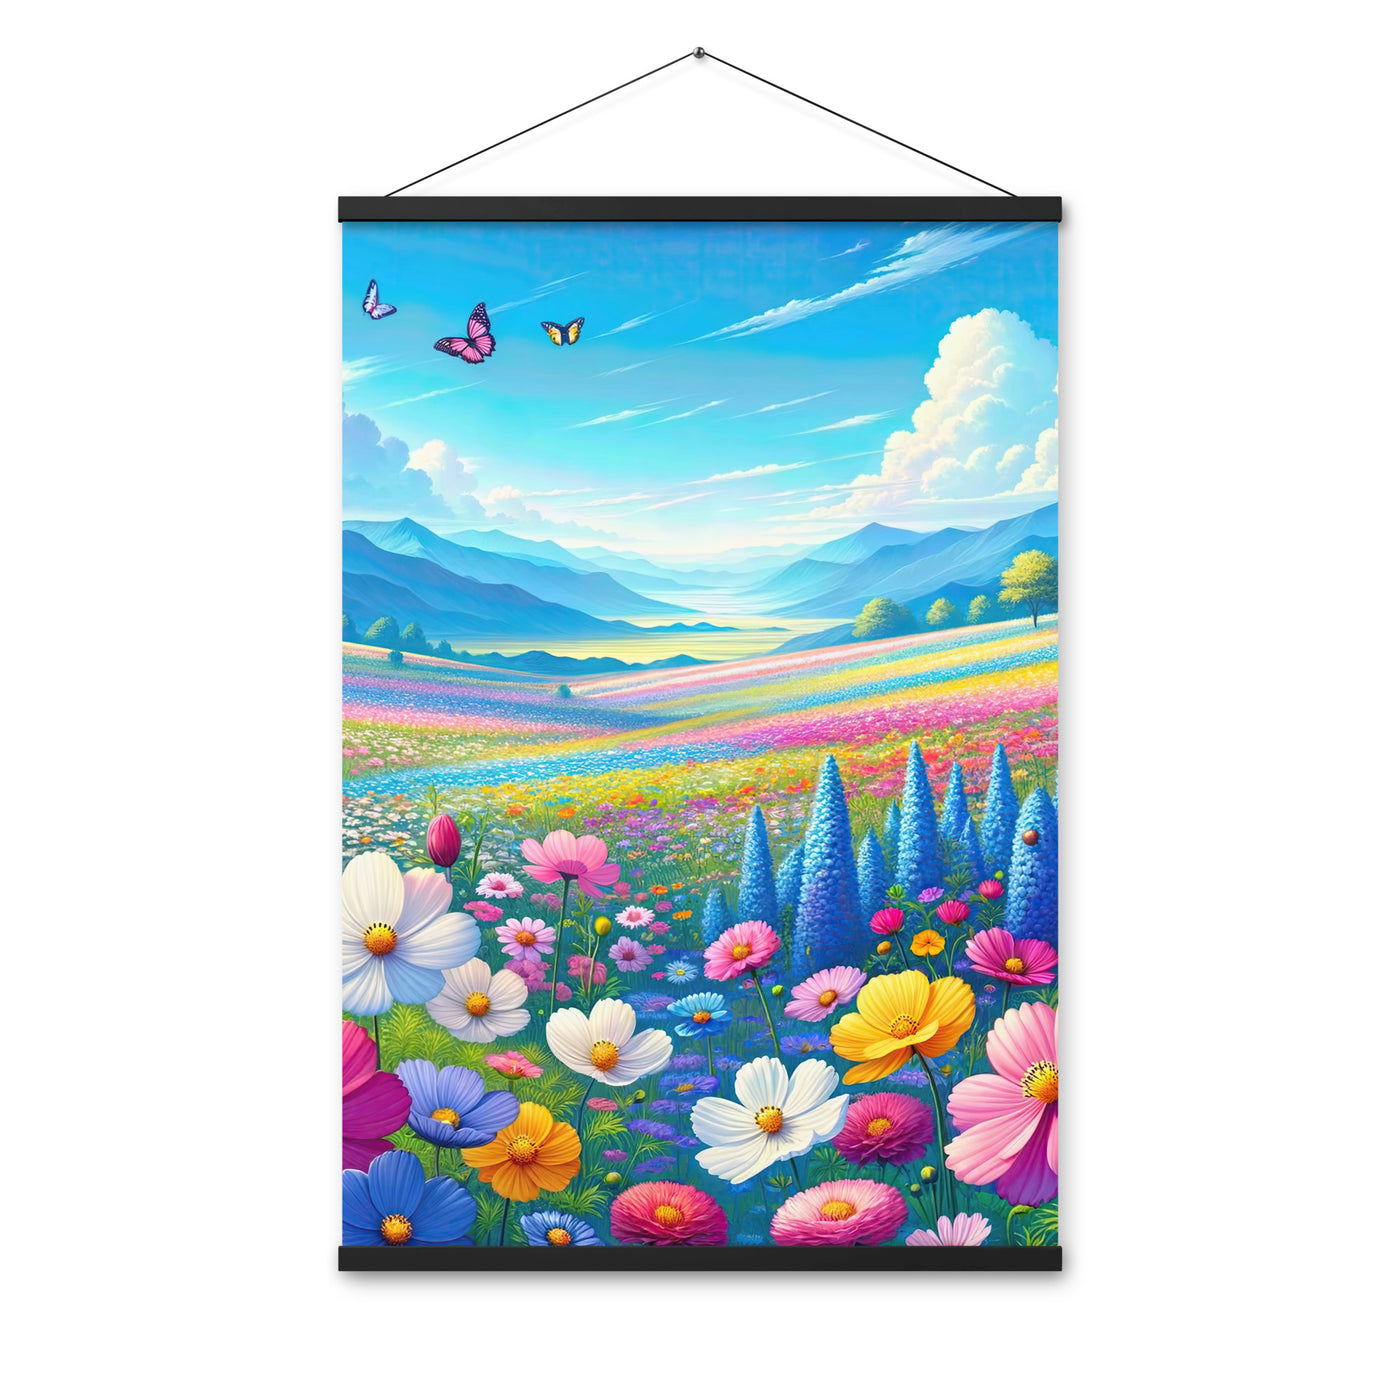 Weitläufiges Blumenfeld unter himmelblauem Himmel, leuchtende Flora - Premium Poster mit Aufhängung camping xxx yyy zzz 61 x 91.4 cm